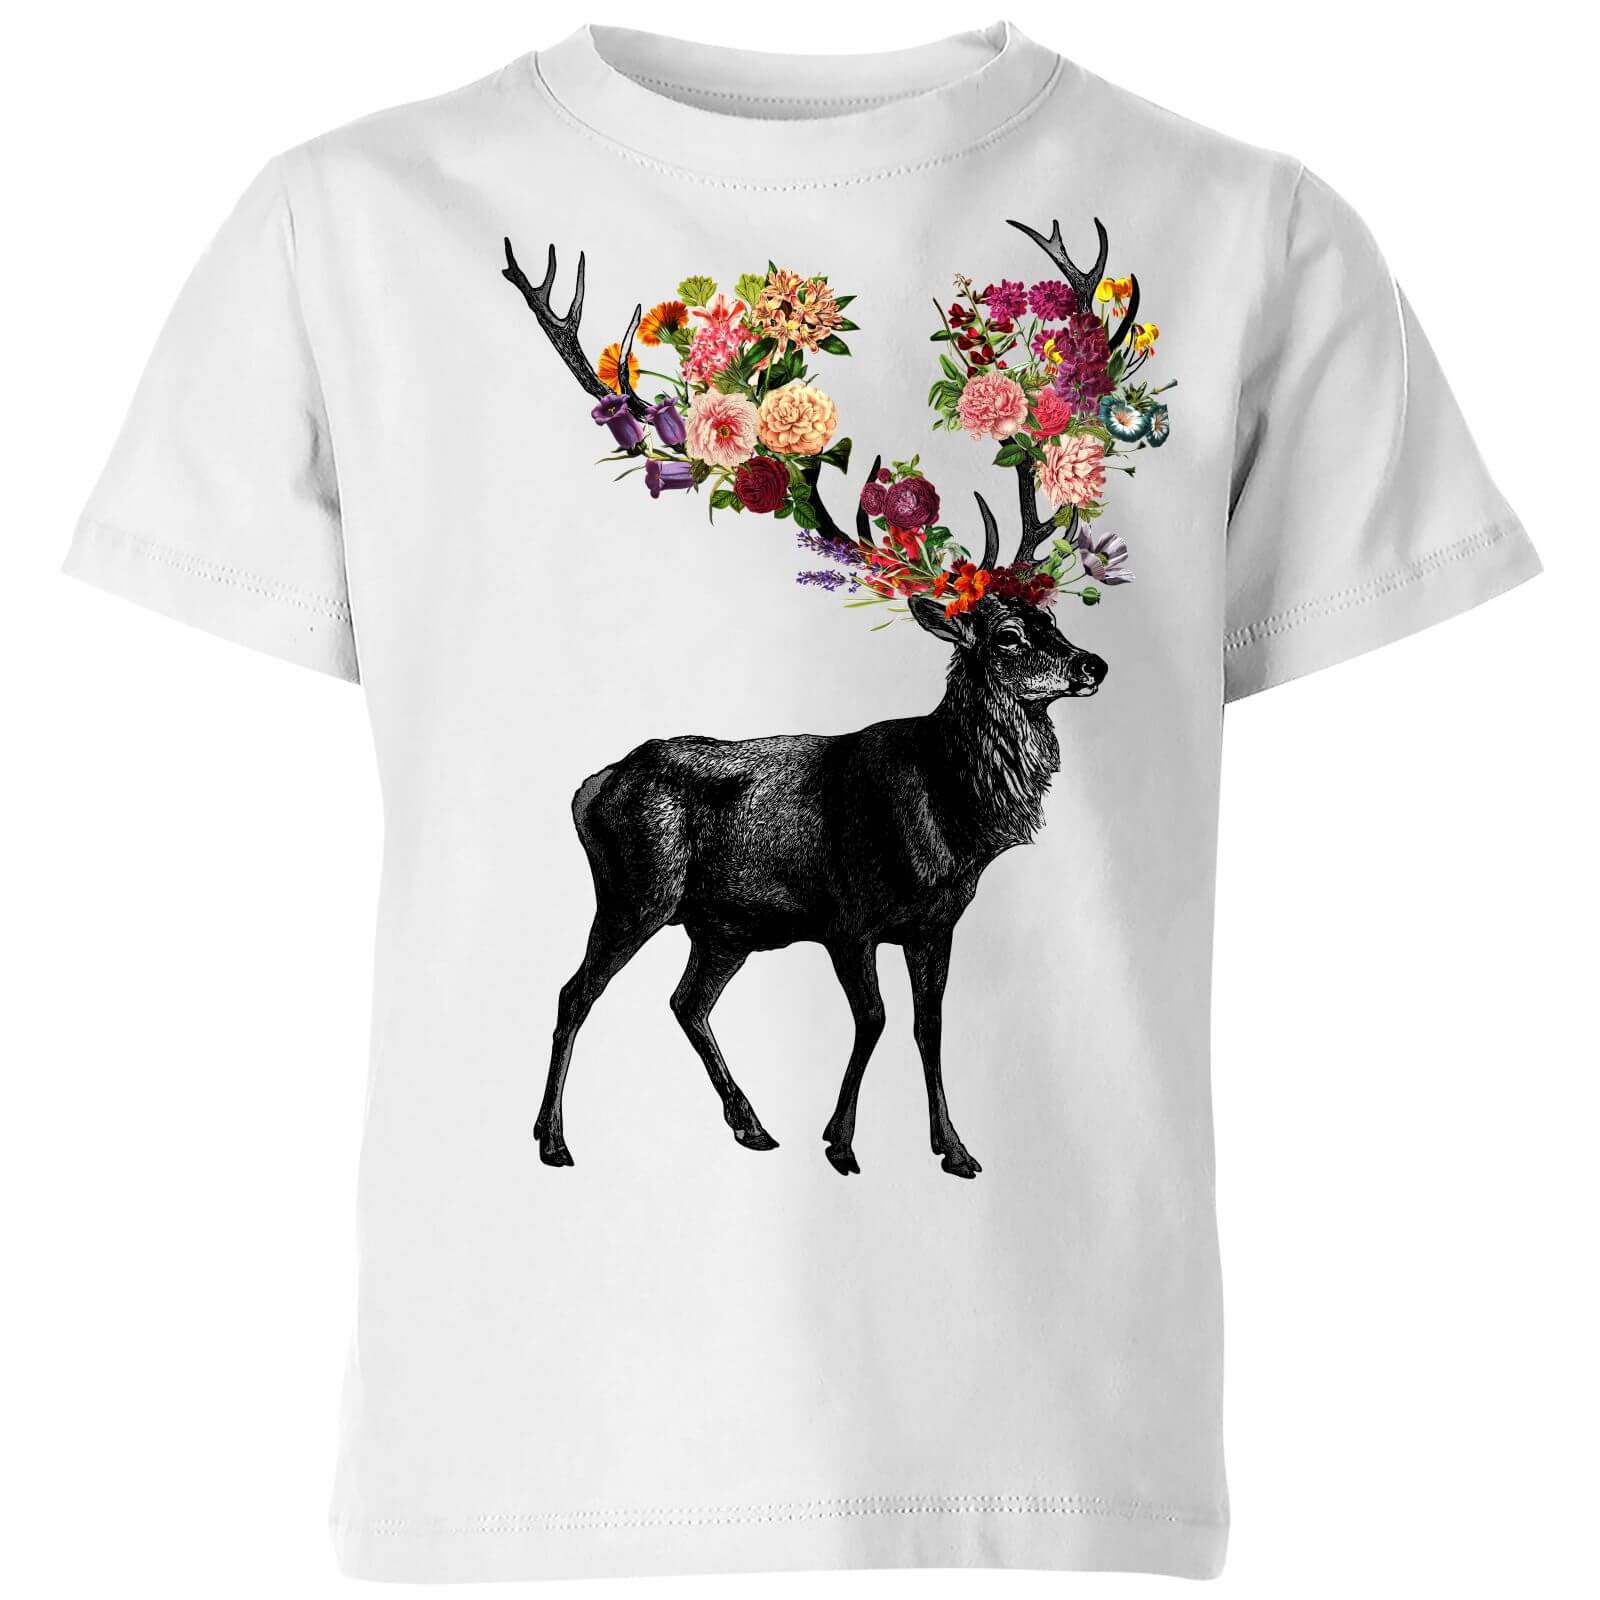 Tobias Fonseca Spring Itself Deer Floral Kids' T-Shirt - White - 3-4 Years - White